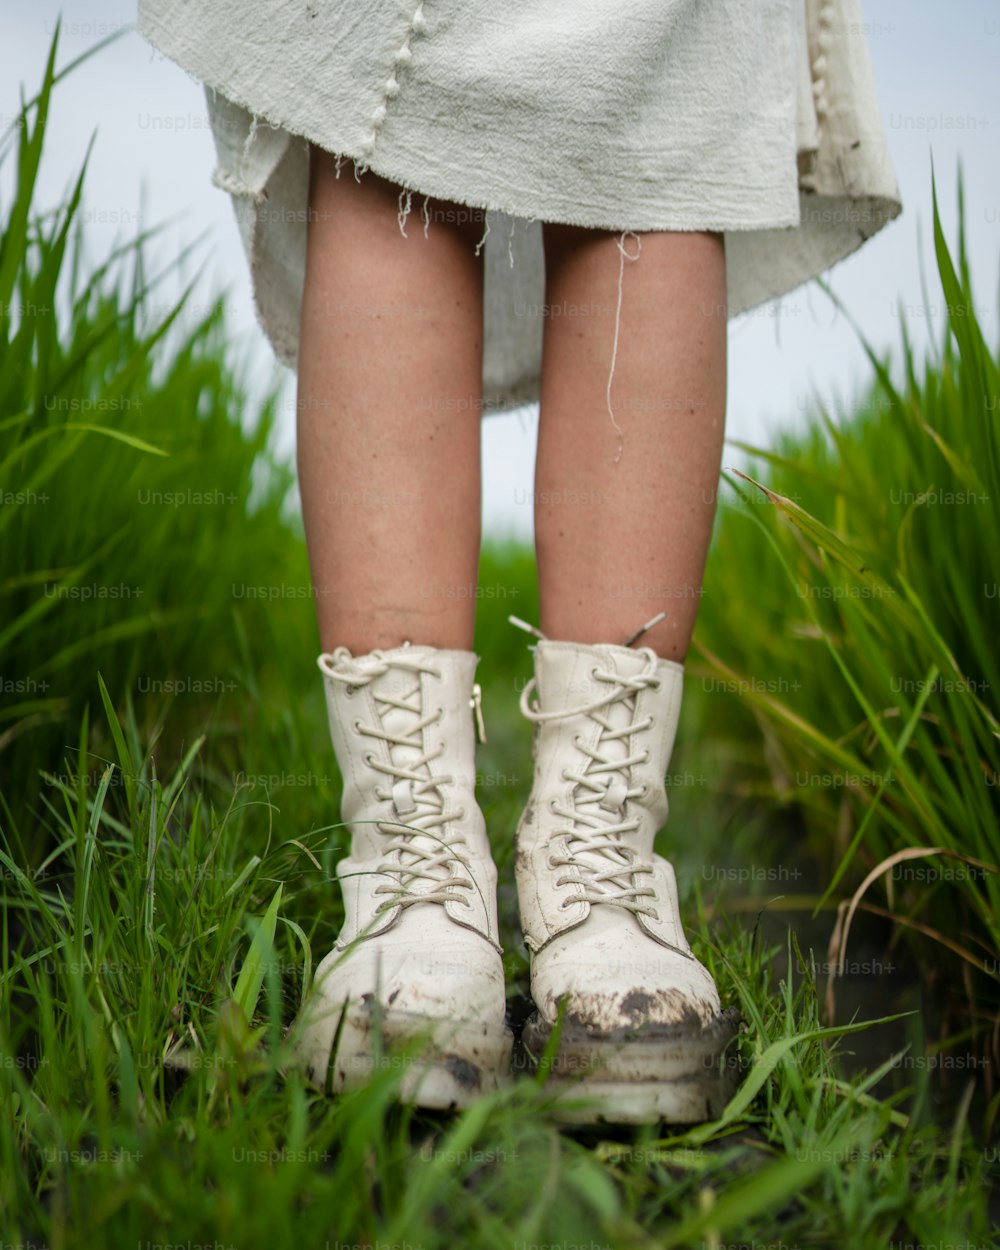 um close up de uma pessoa usando botas brancas